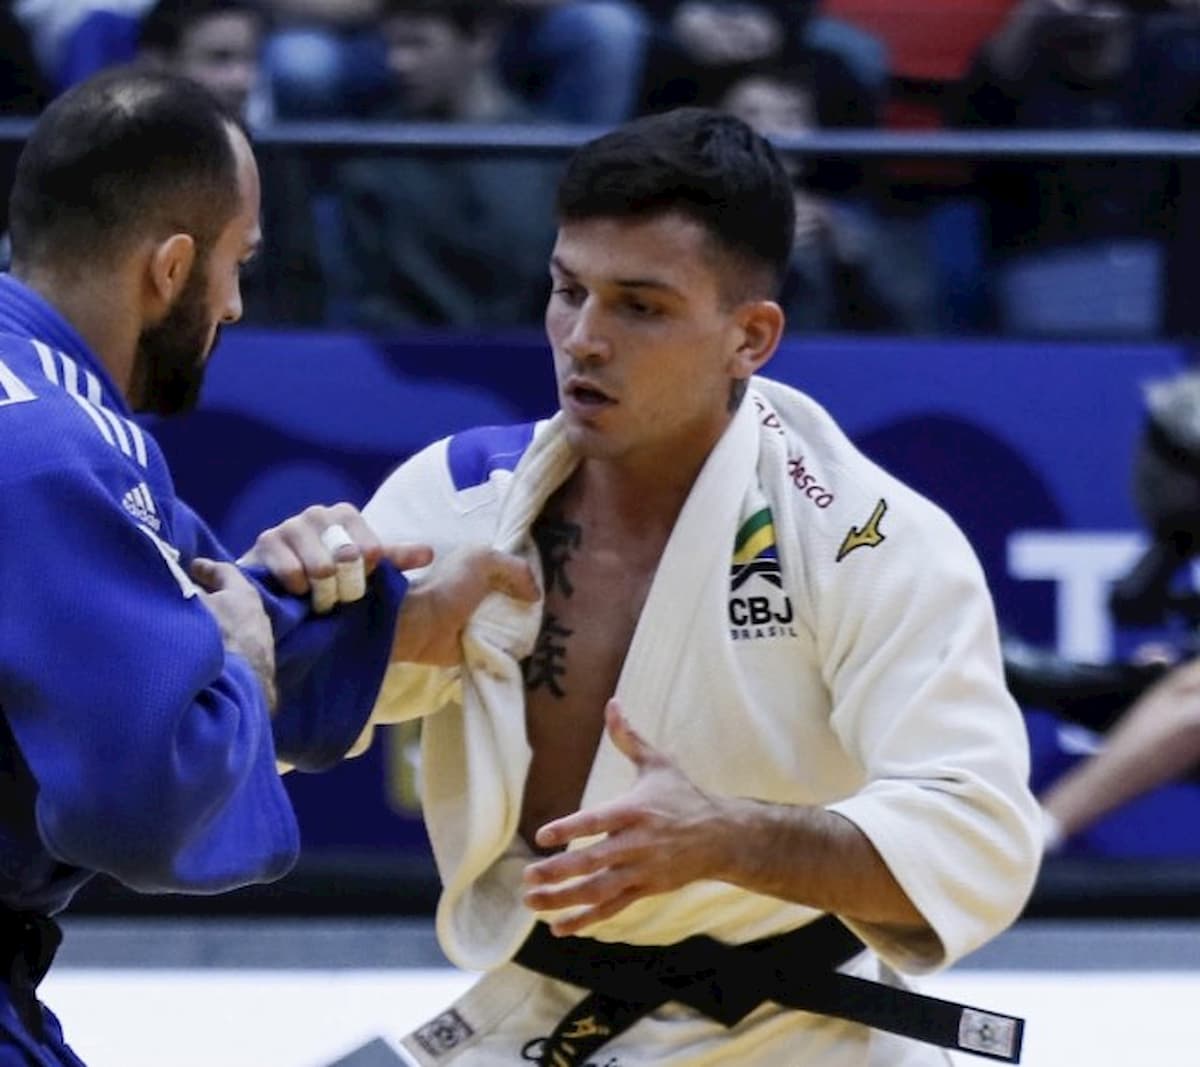 Na repescagem, Cargnin enfrentou o judoca da Geórgia, Bagrati Niniashvili